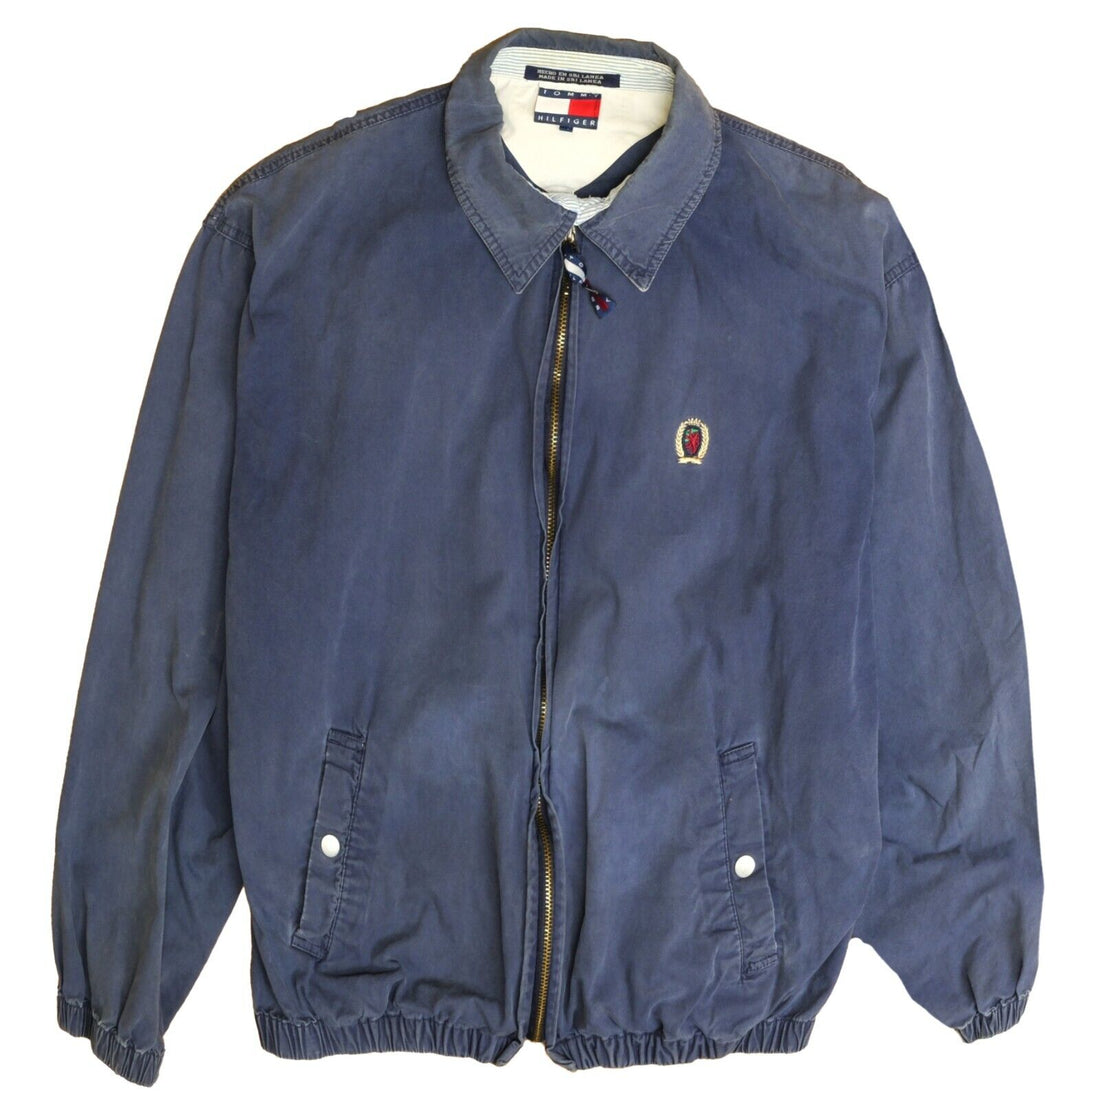 Vintage Tommy Hilfiger Harrington Jacket Size Large Blue